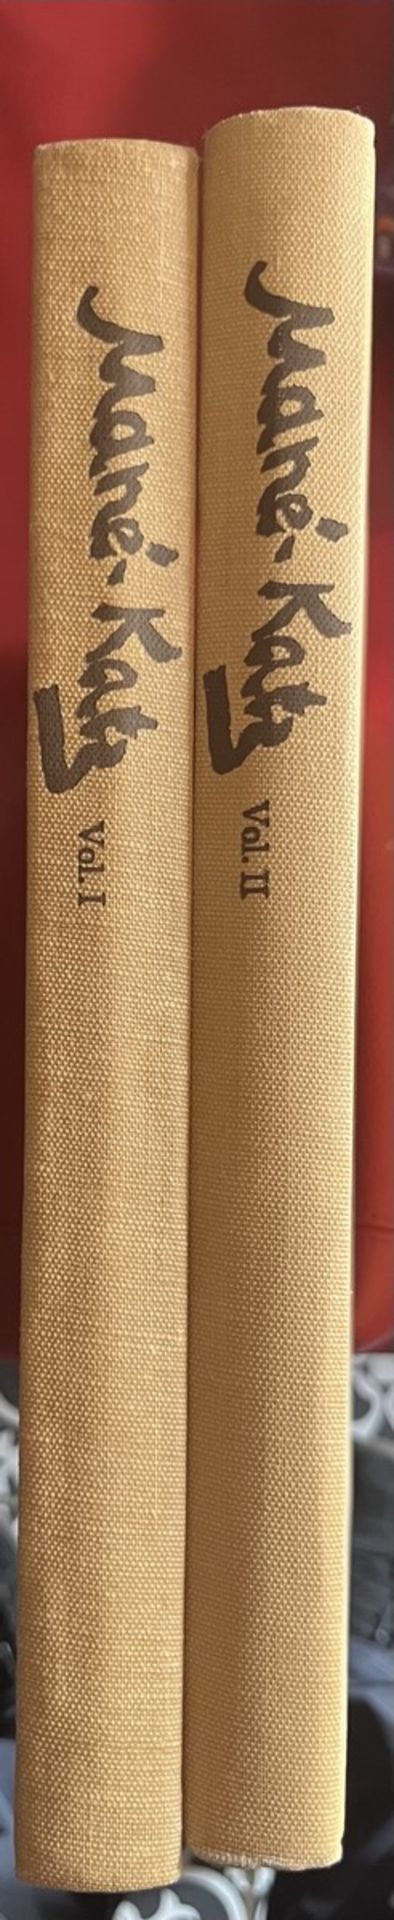 [MANE- KATZ]- l’Oeuvre complète, 2 vols. 1894-1962 .L’Oeuvre complète (2 Volumes Set) - Bild 4 aus 6